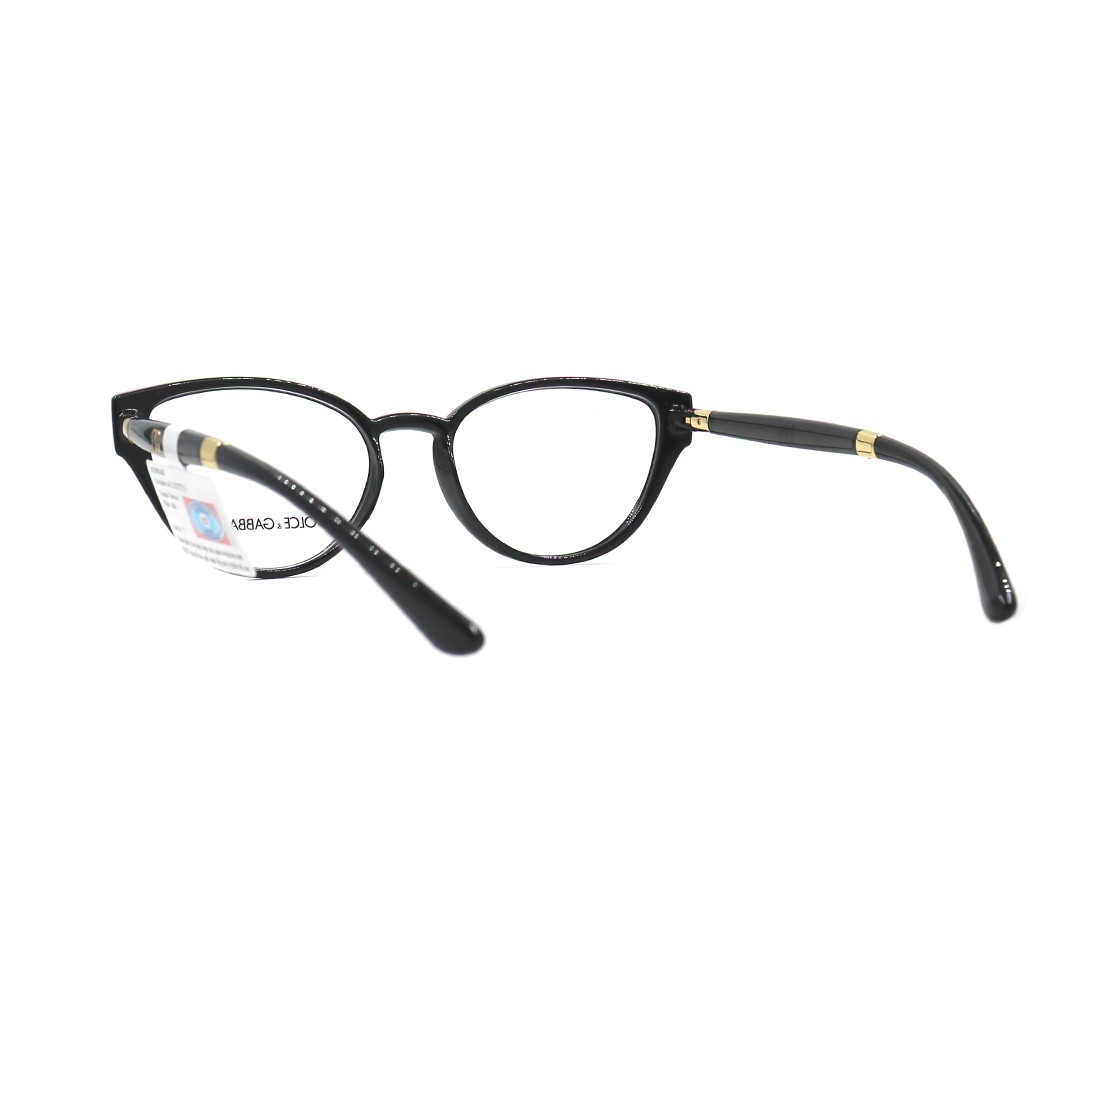 Gọng kính,mắt kính chính hãng DOLCE & GABANNA DG5055 501